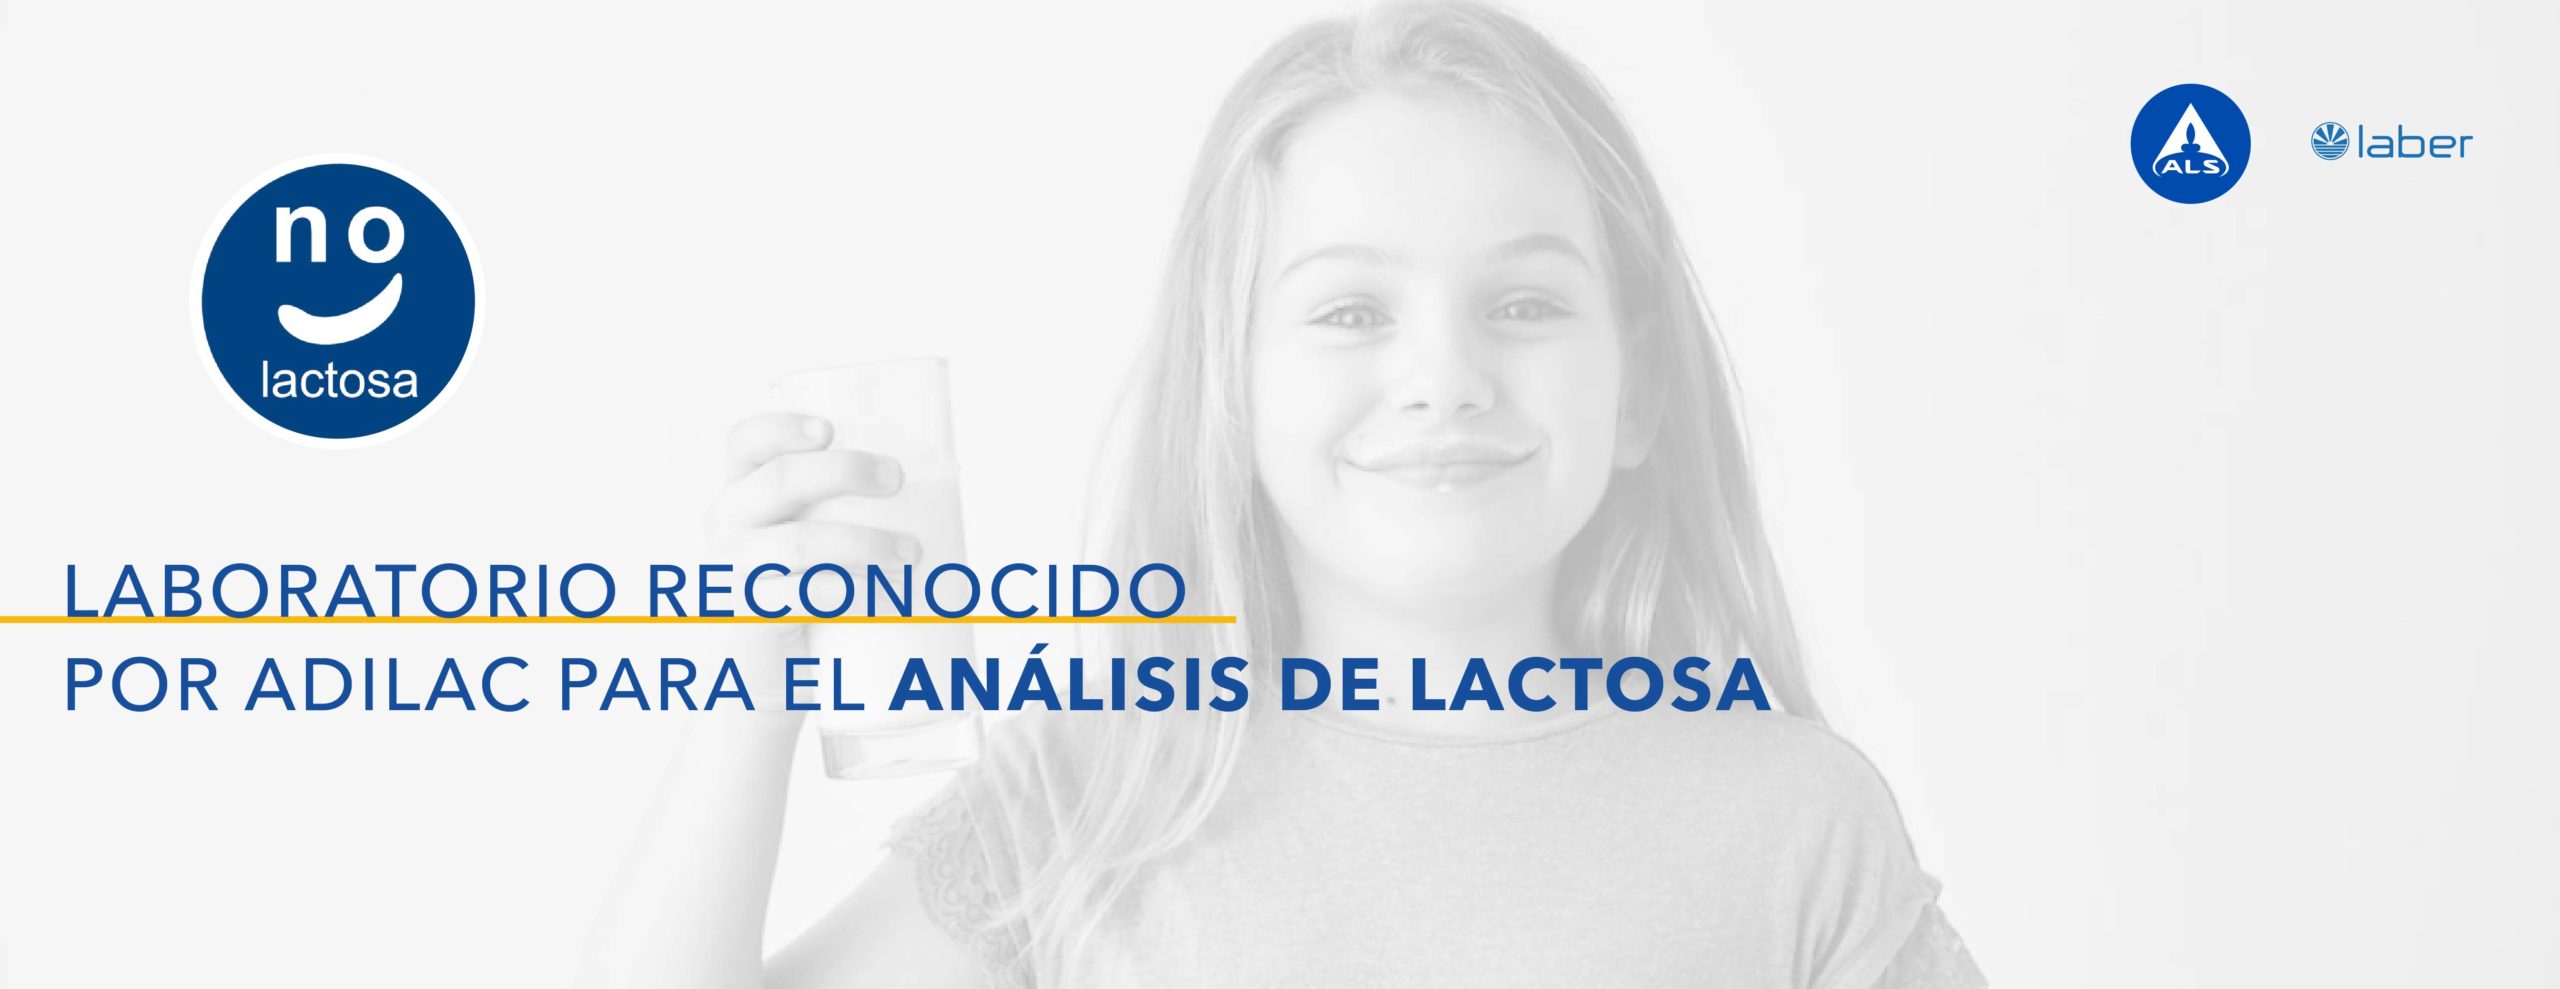 analisis de lactosa ADILAC, 0% lactosa, intolerante a la lactosa, producto libre de lactosa, ALS LABER